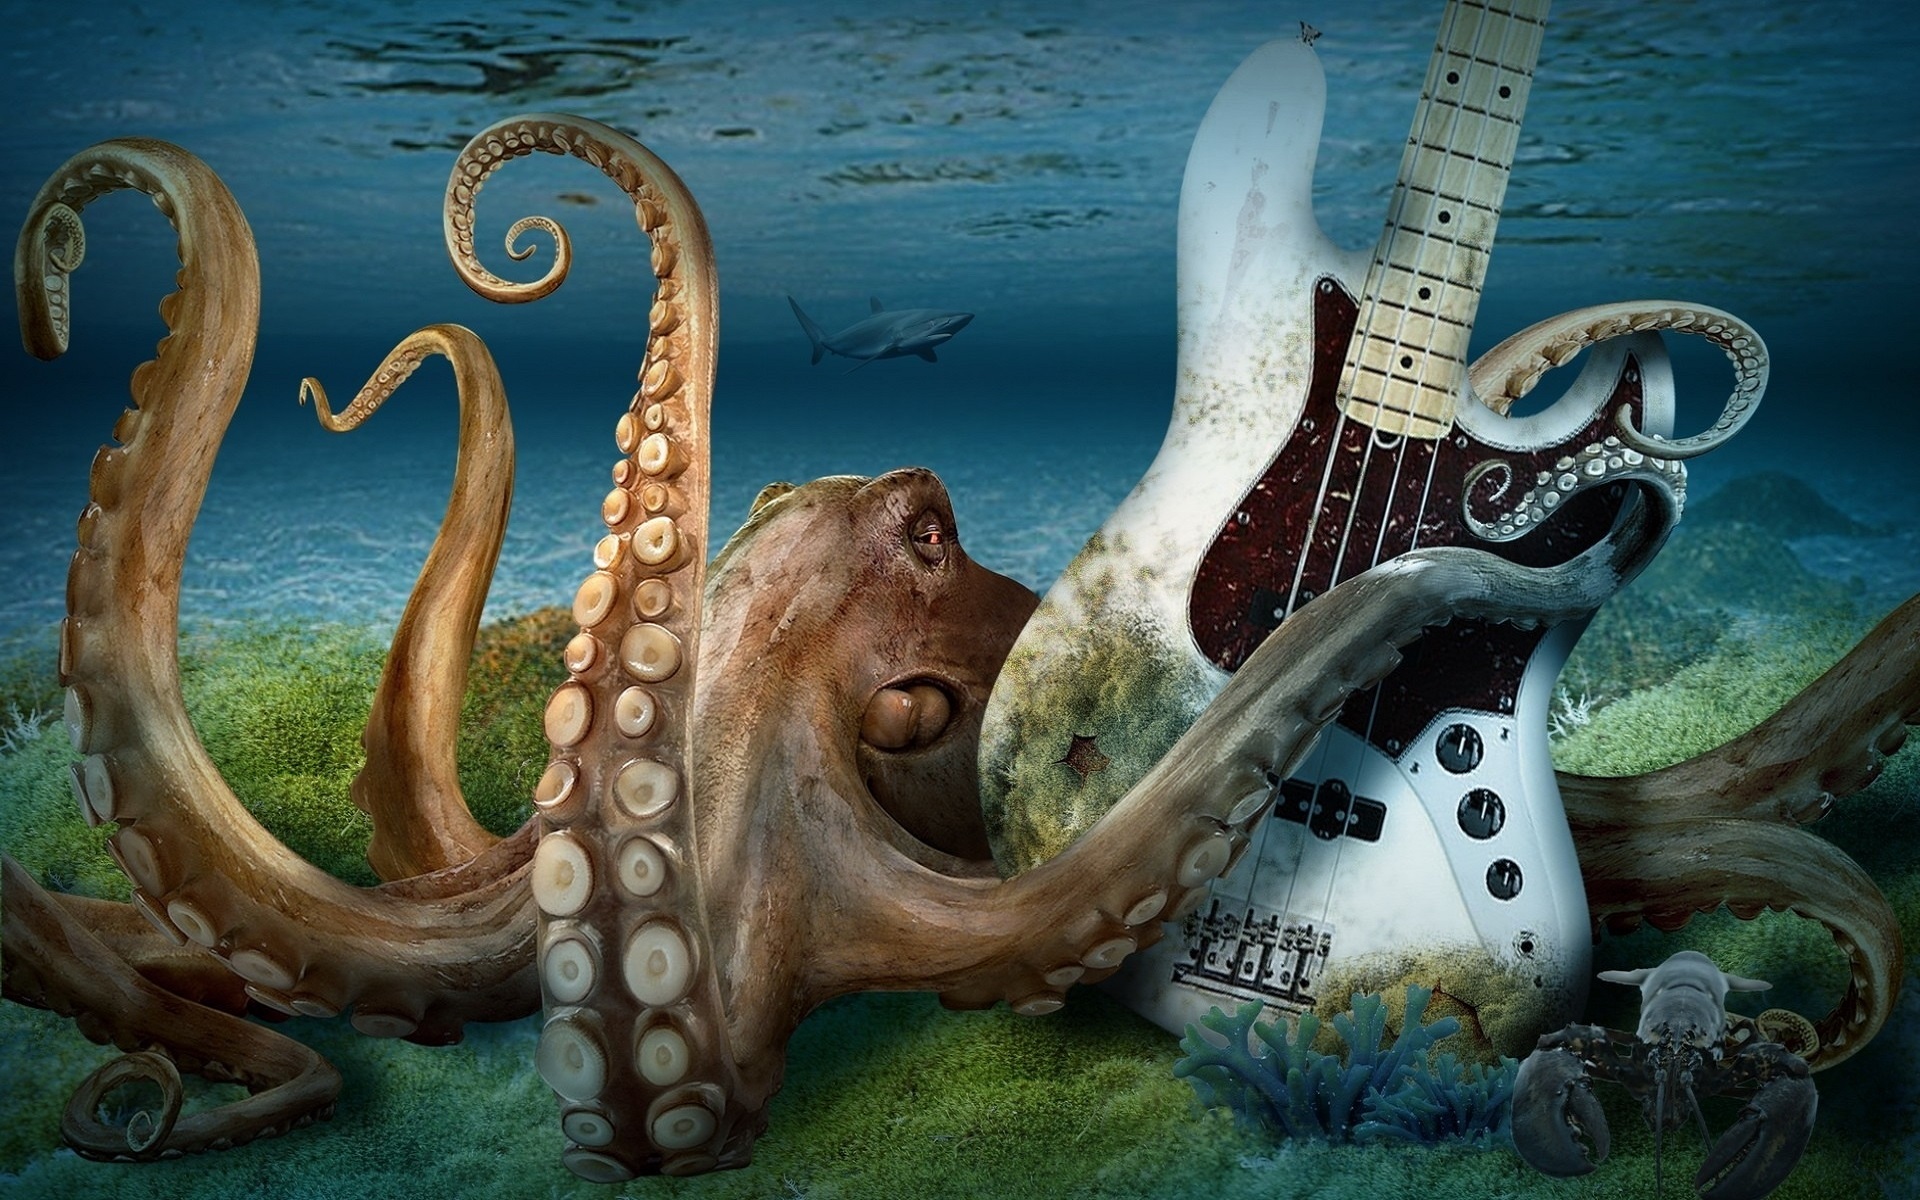 3d, animal, cgi, guitar, ocean, octopus, shark, tentacle wallpaper for mobile